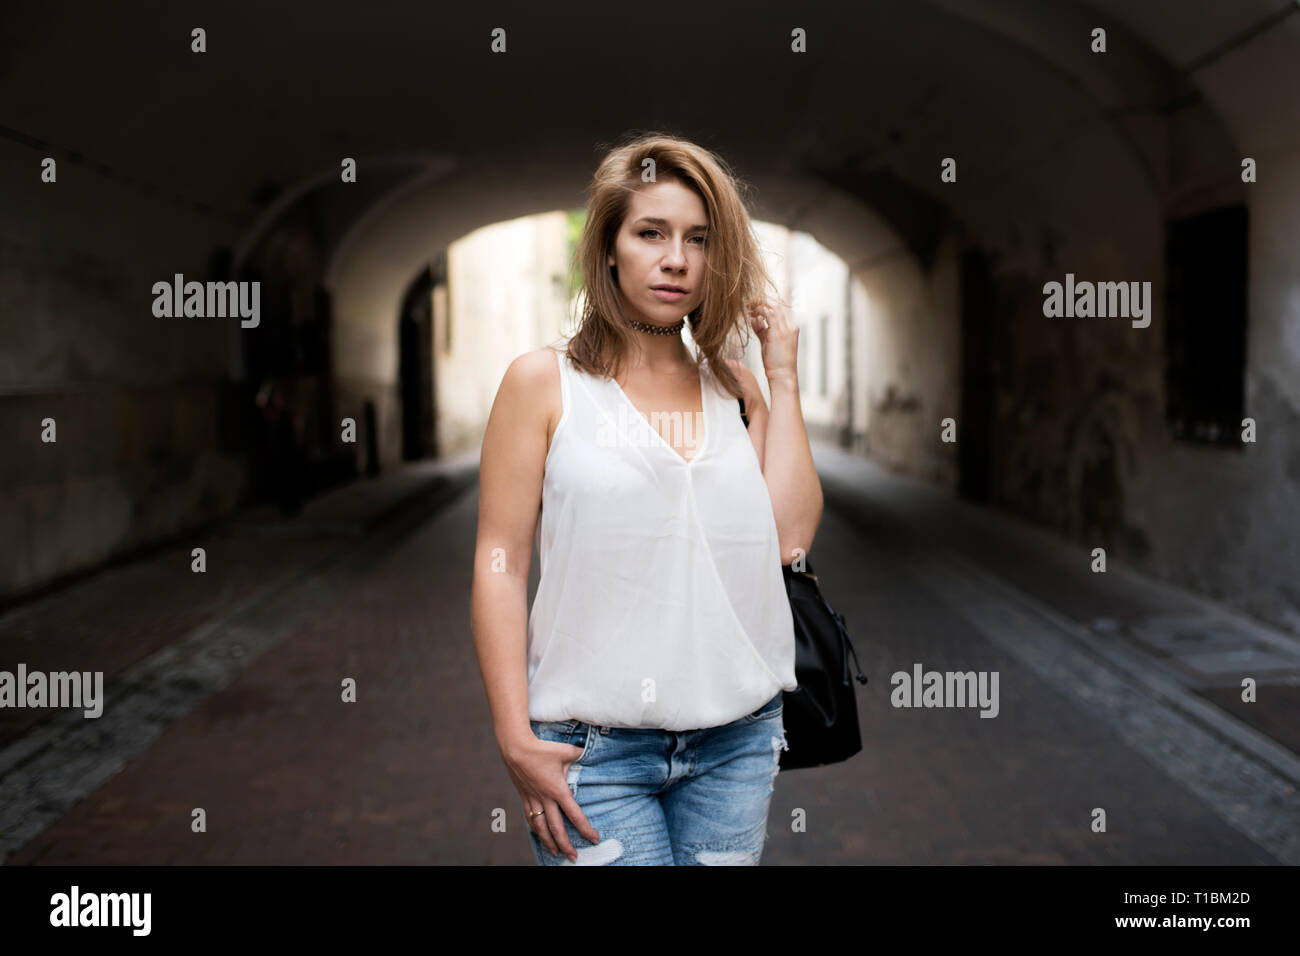 Portrait von die schöne junge Frau, mit der Hand in ihren kurzen Haaren. Schatten in einem Tunnel als interessanten Hintergrund. Stockfoto